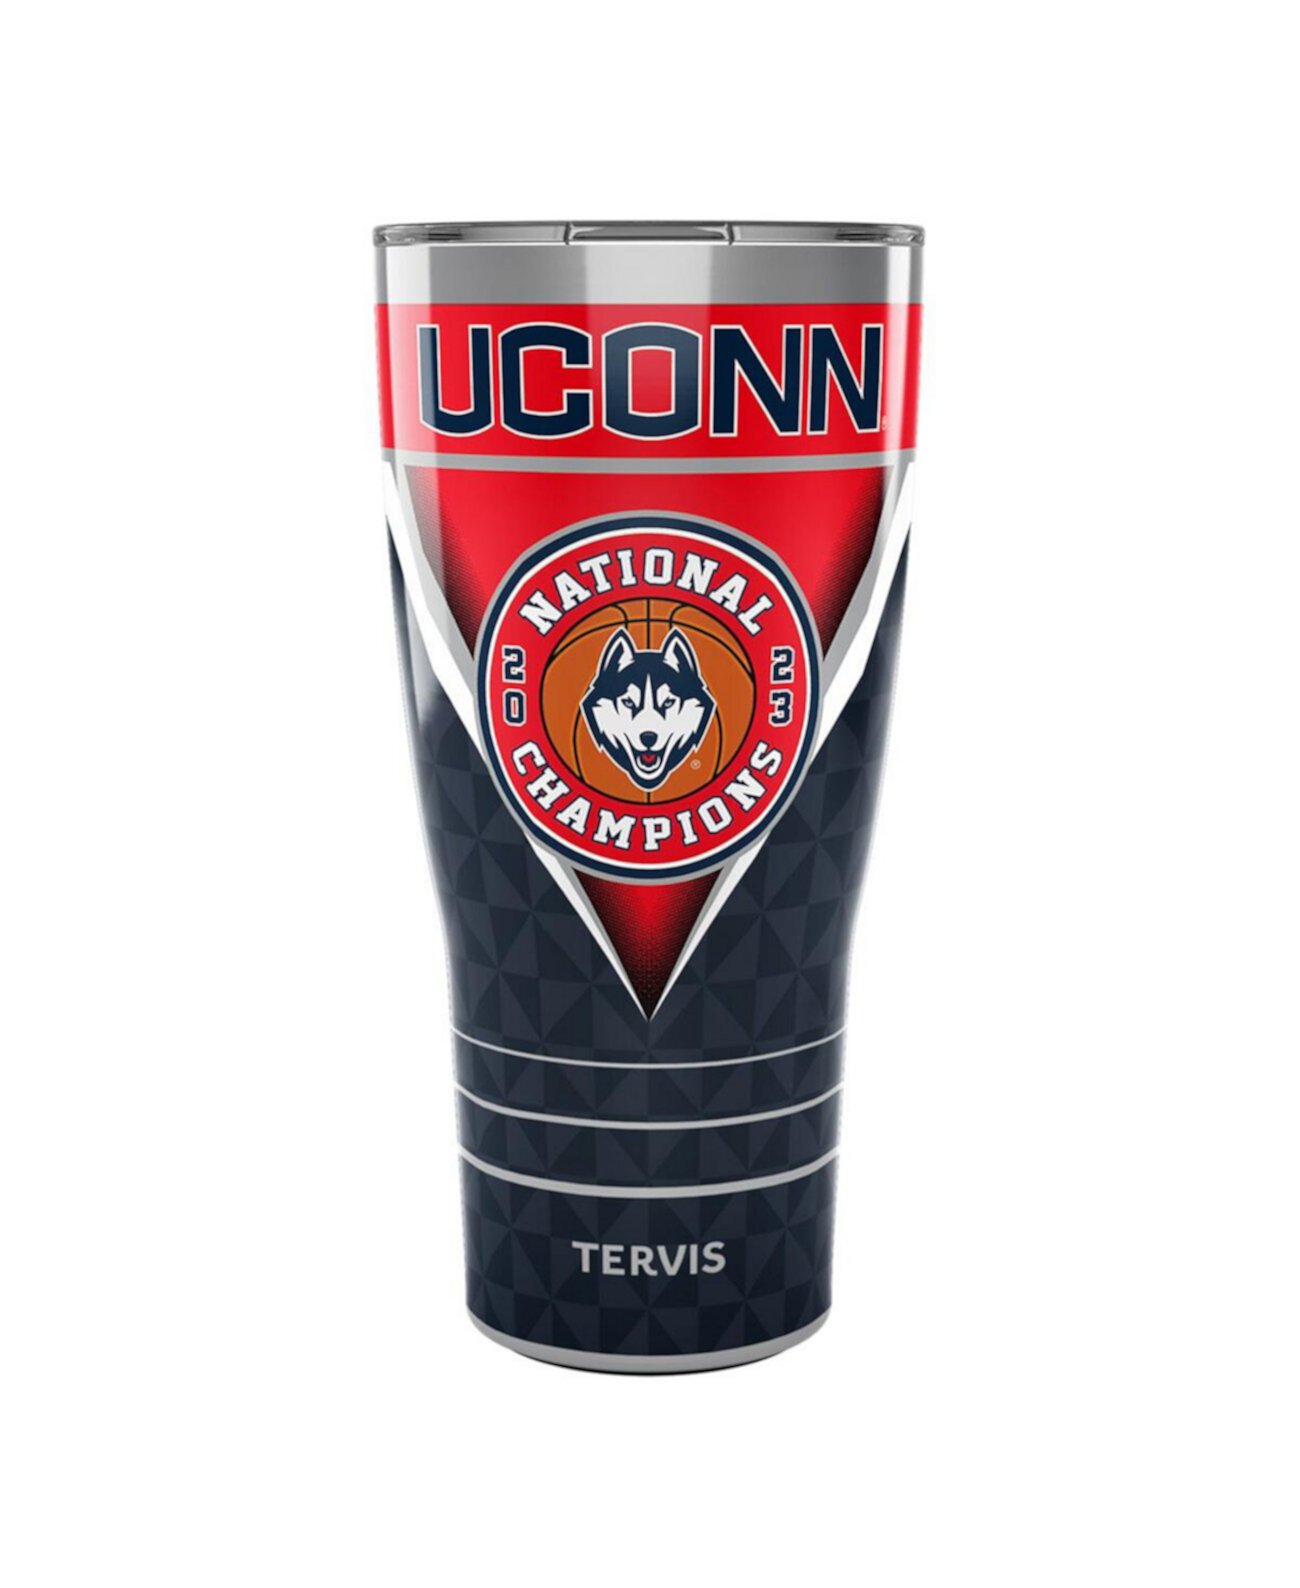 UConn Huskies 2023 NCAA, мужские национальные чемпионы по баскетболу, стакан из нержавеющей стали на 30 унций Tervis